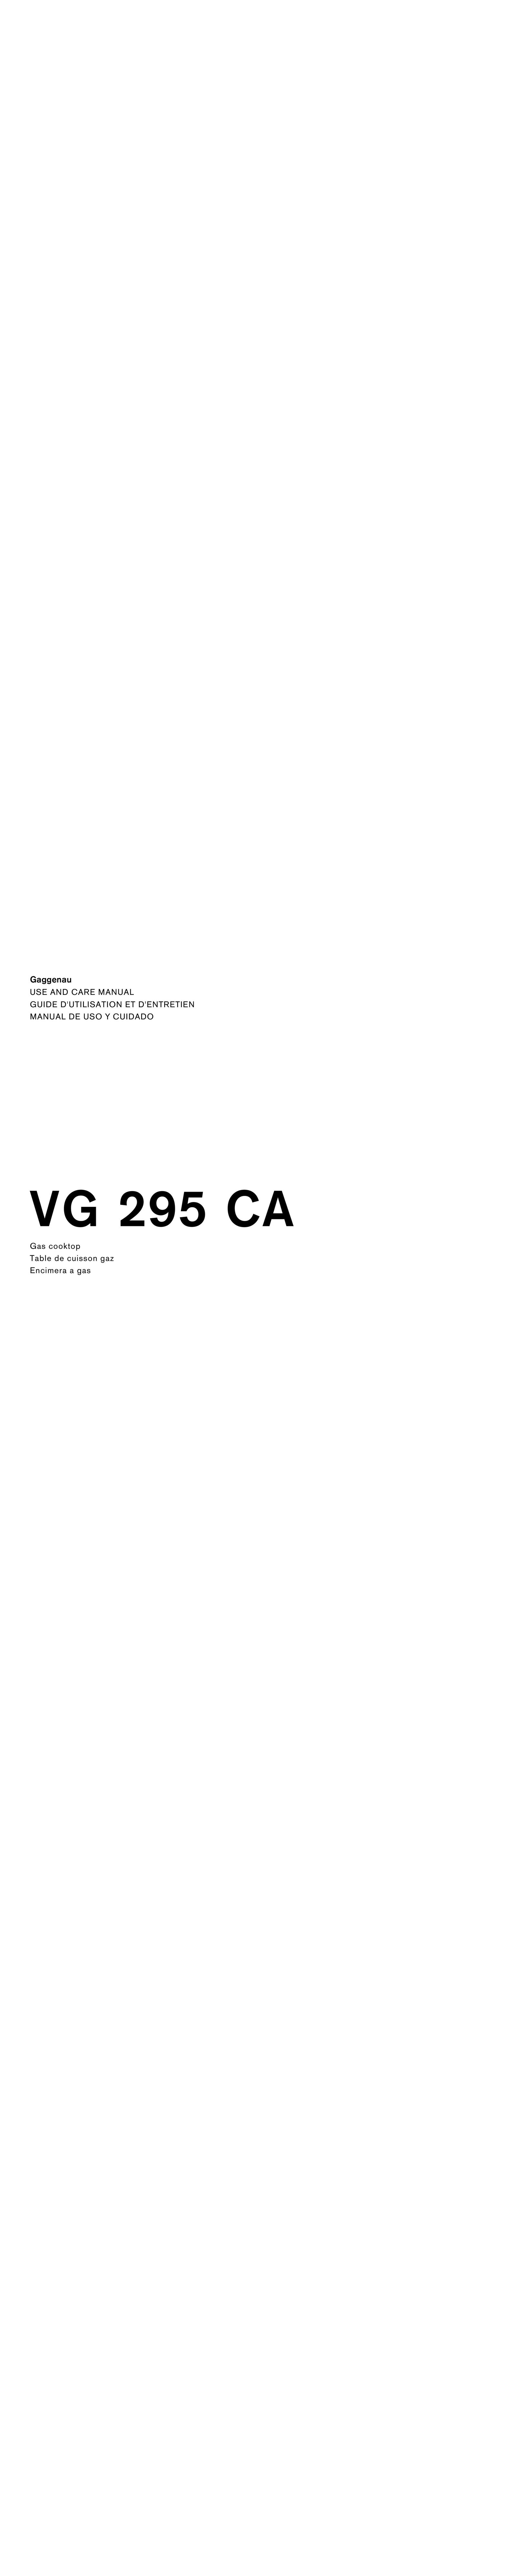 Gaggenau VG 295 CA Cooktop User Manual